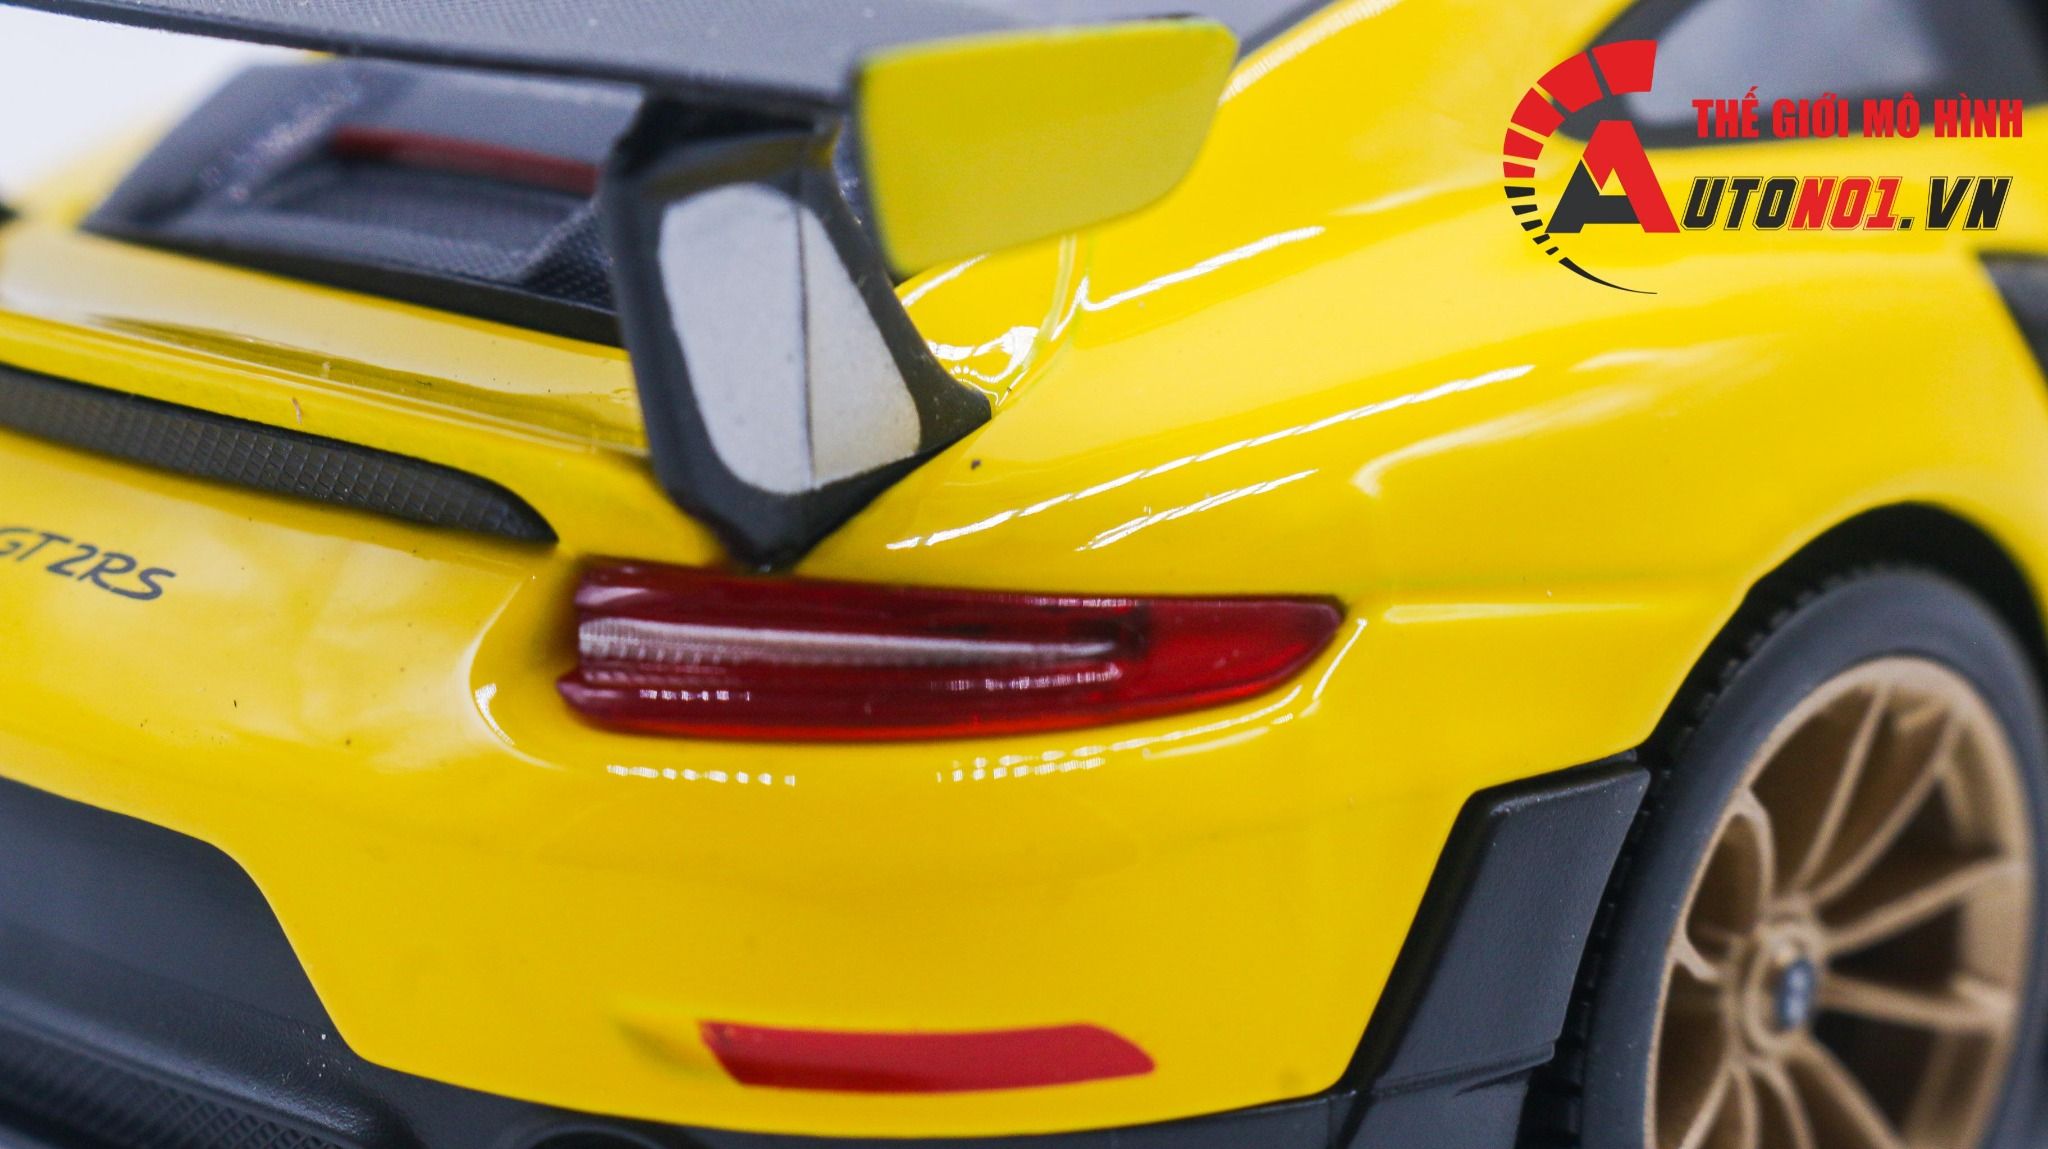  Mô hình xe Porsche 911 Gt2 Rs 2018 Yellow 1:24 Maisto 5749 